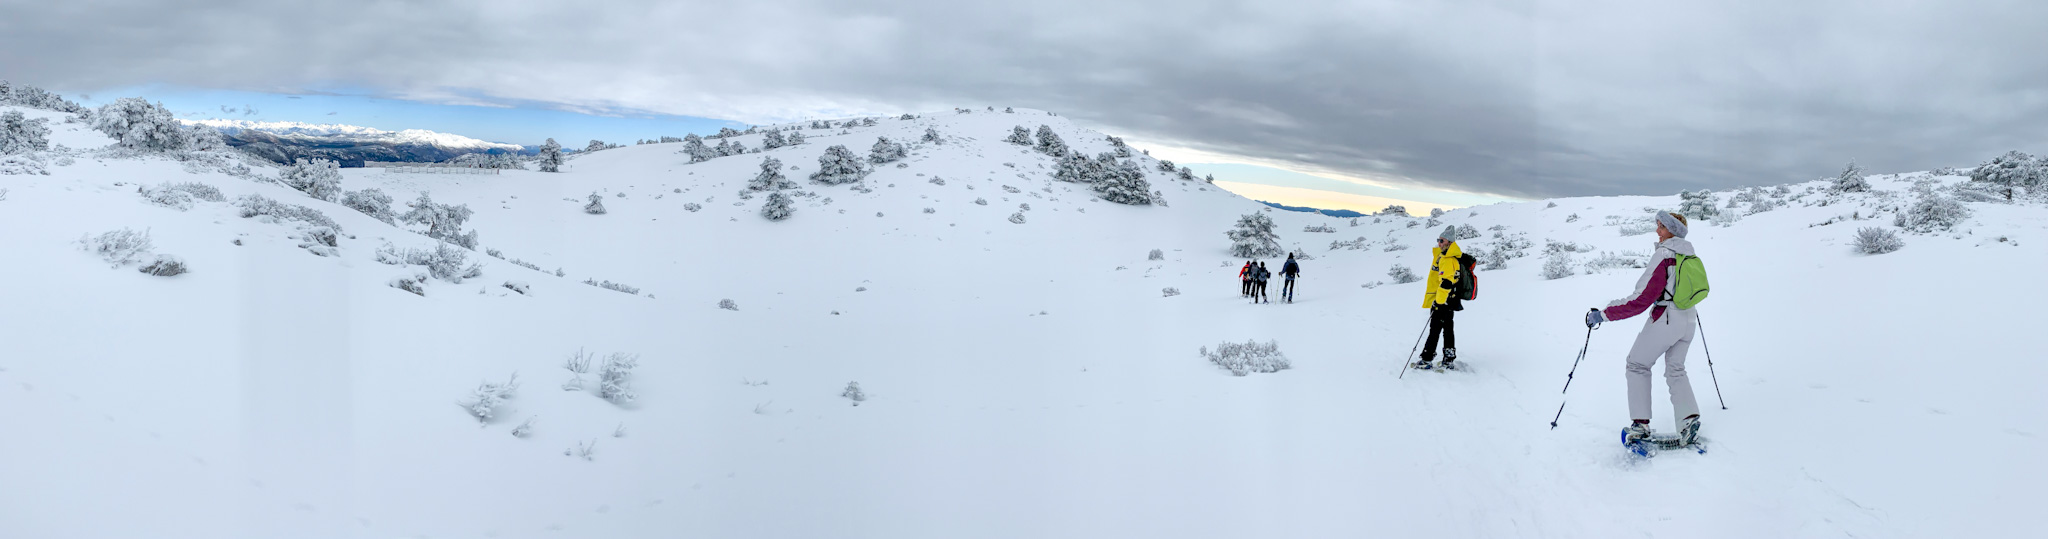 Randonnée en raquettes à neige Mercantour, Alpes Maritimes